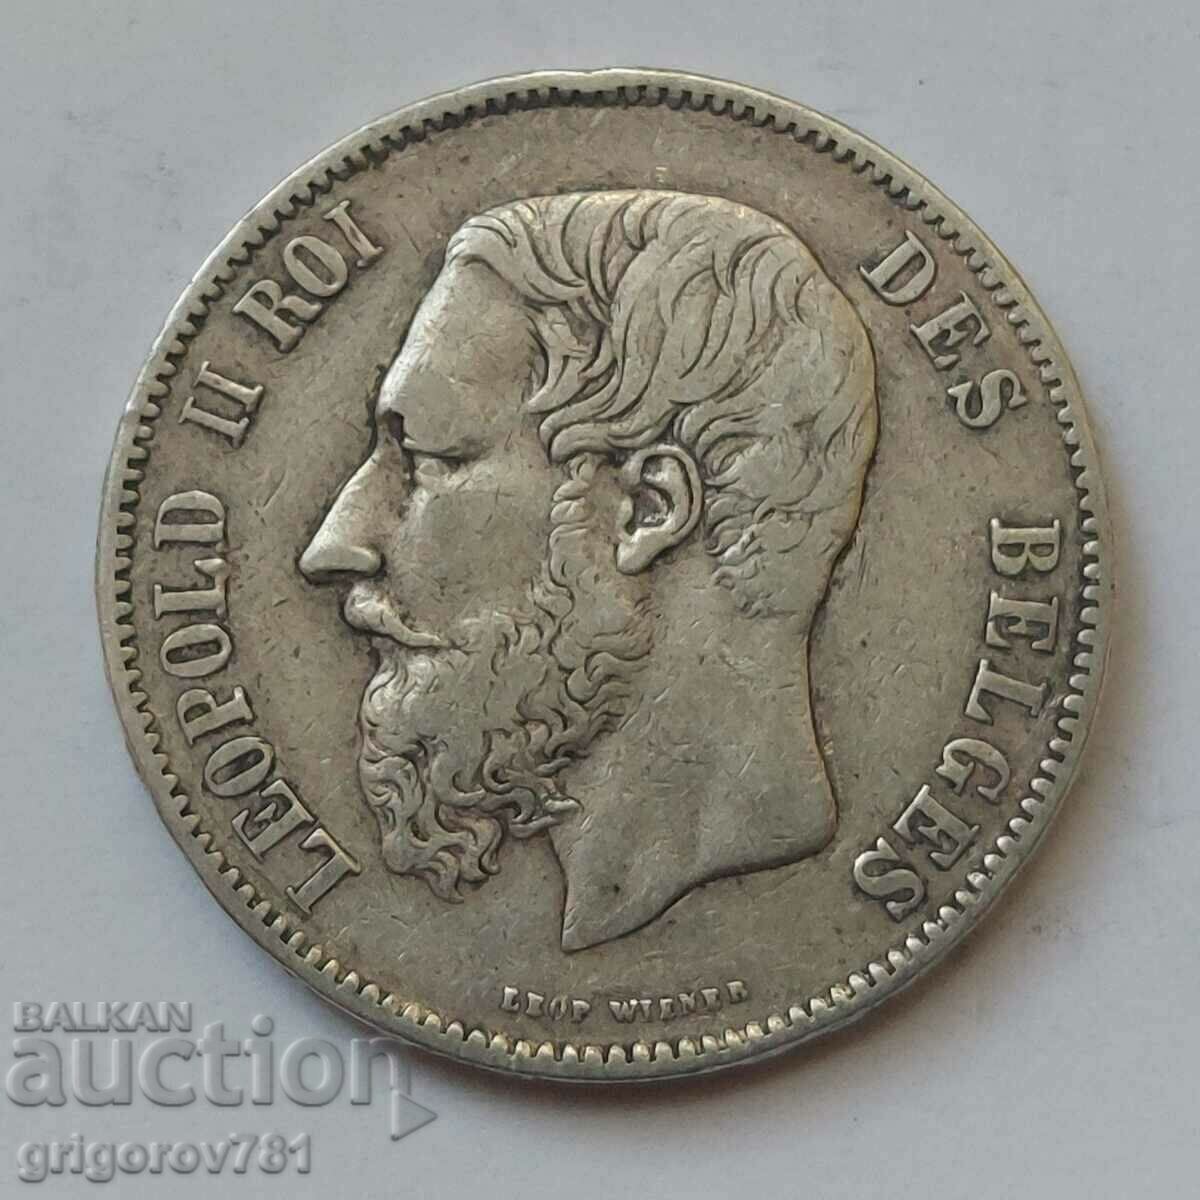 Ασημένιο 5 Φράγκα Βέλγιο 1869 Ασημένιο νόμισμα #163